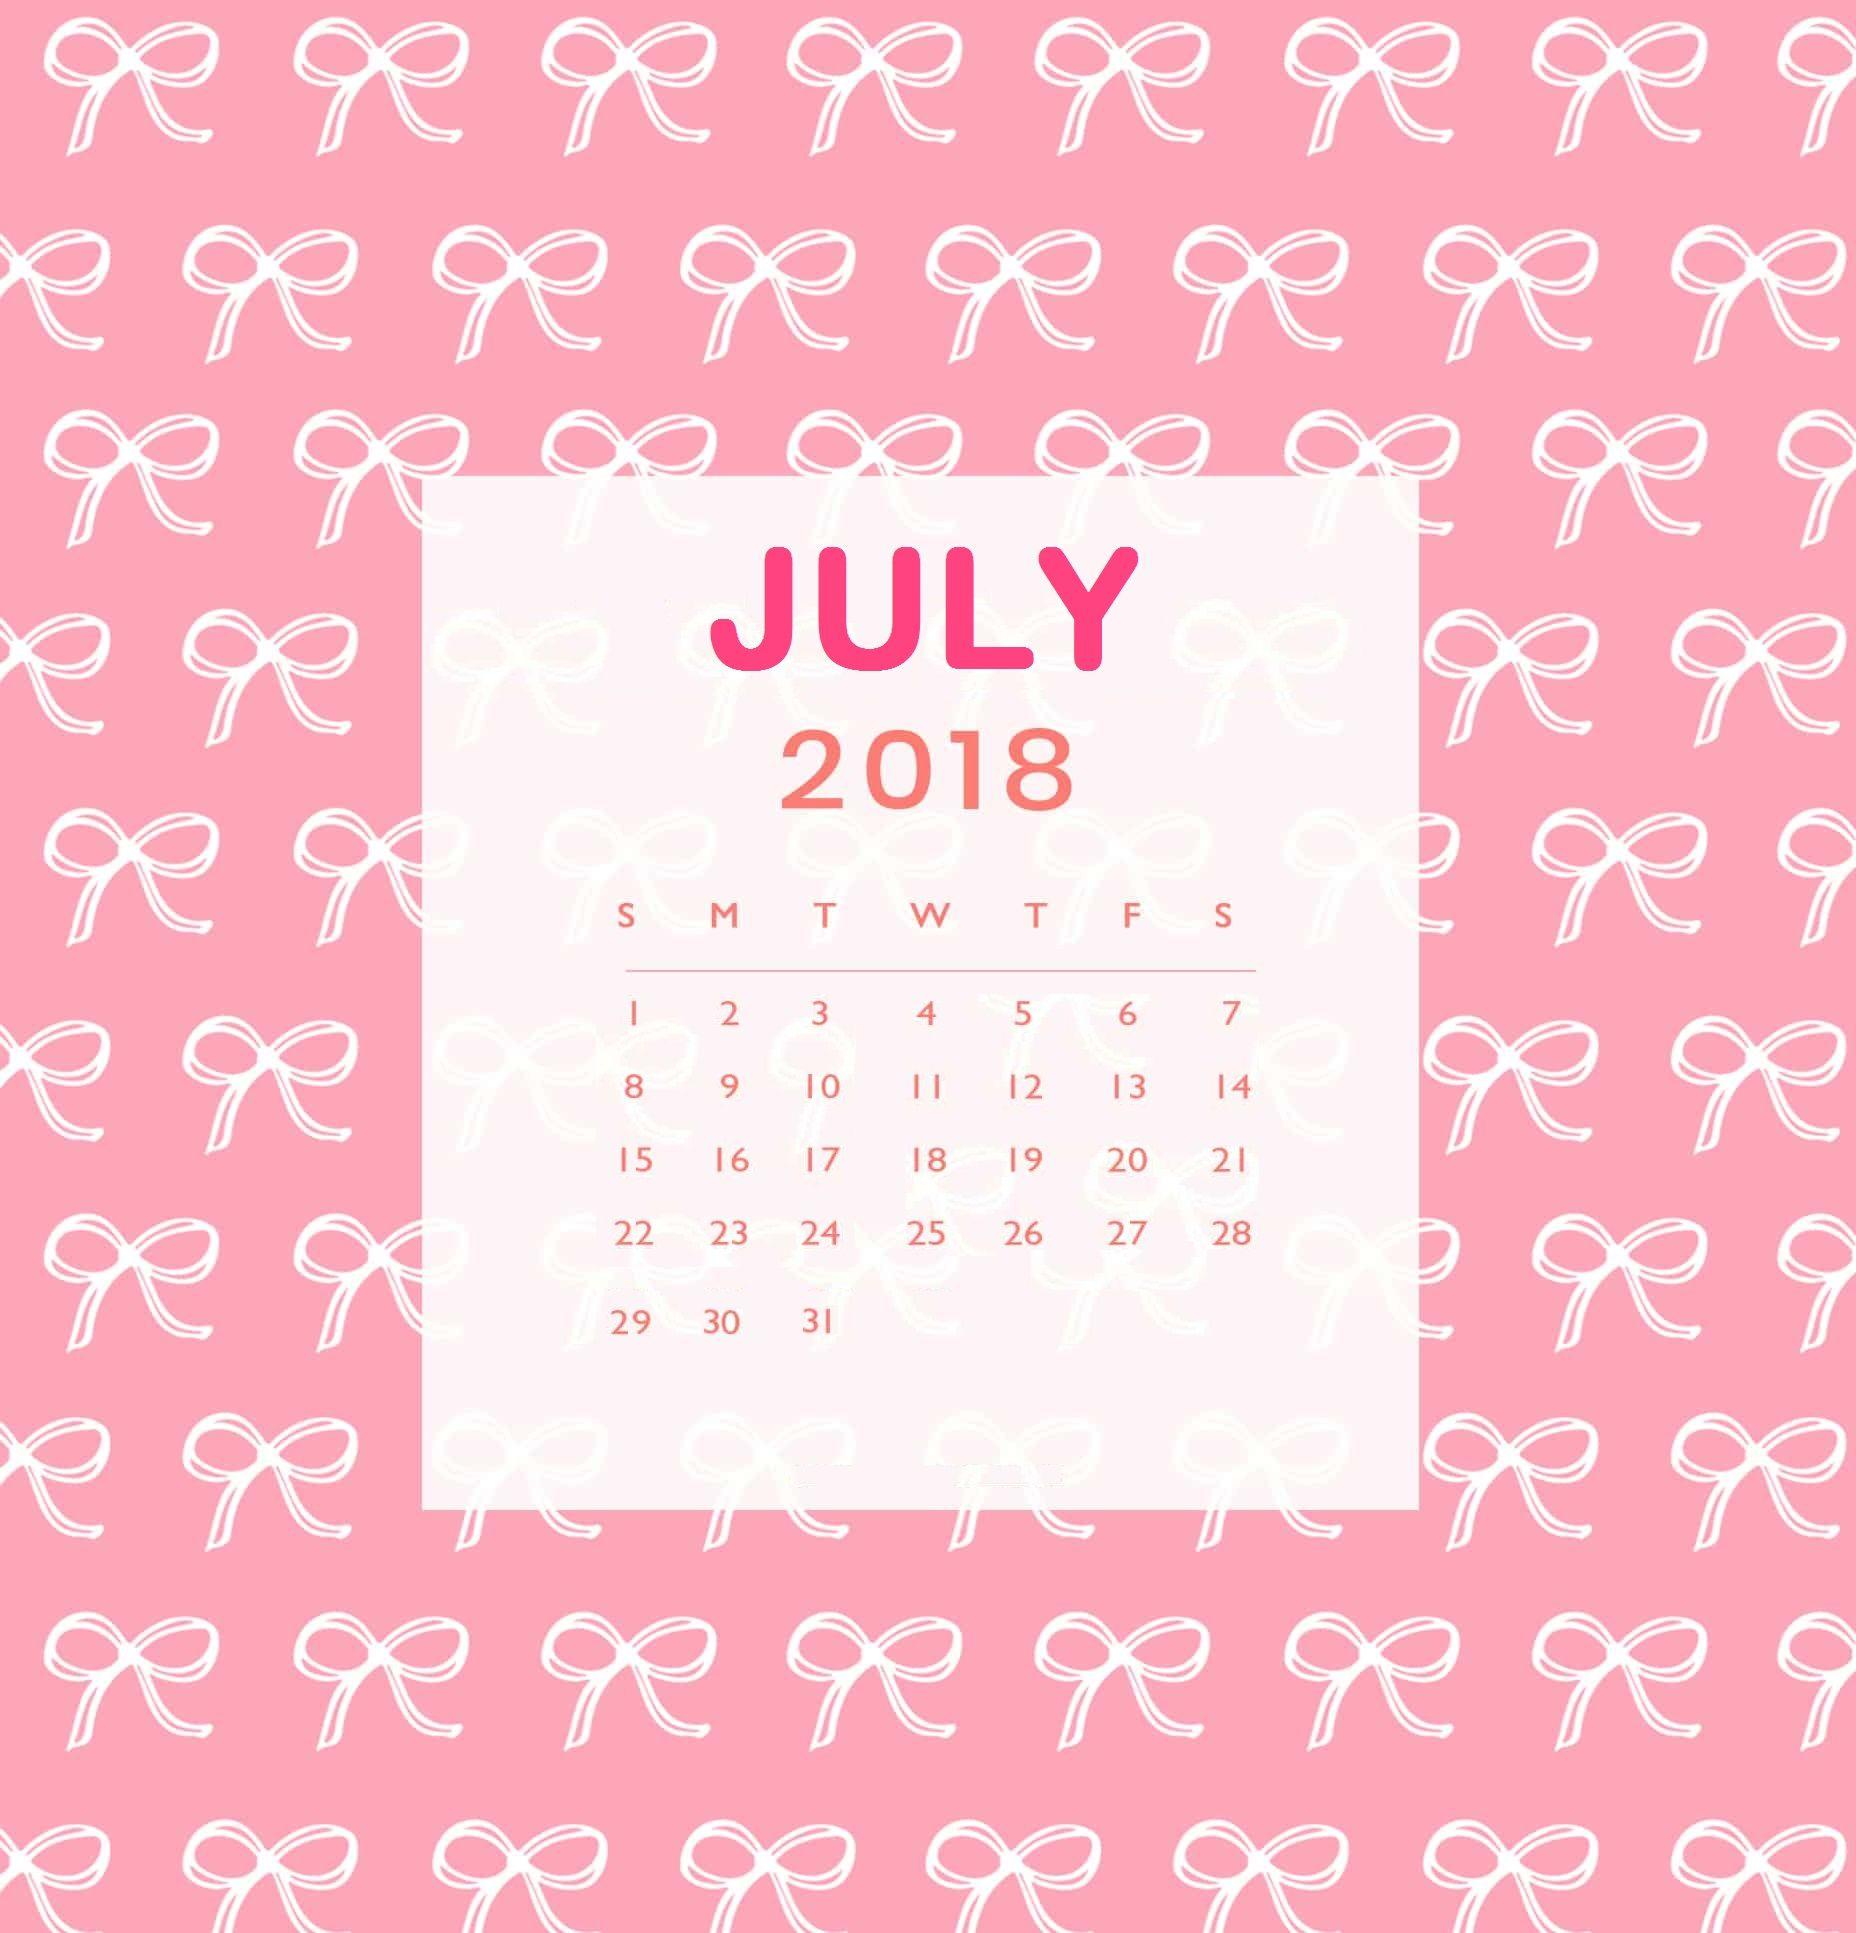 July 2018 iPhone Calendar Wallpaper